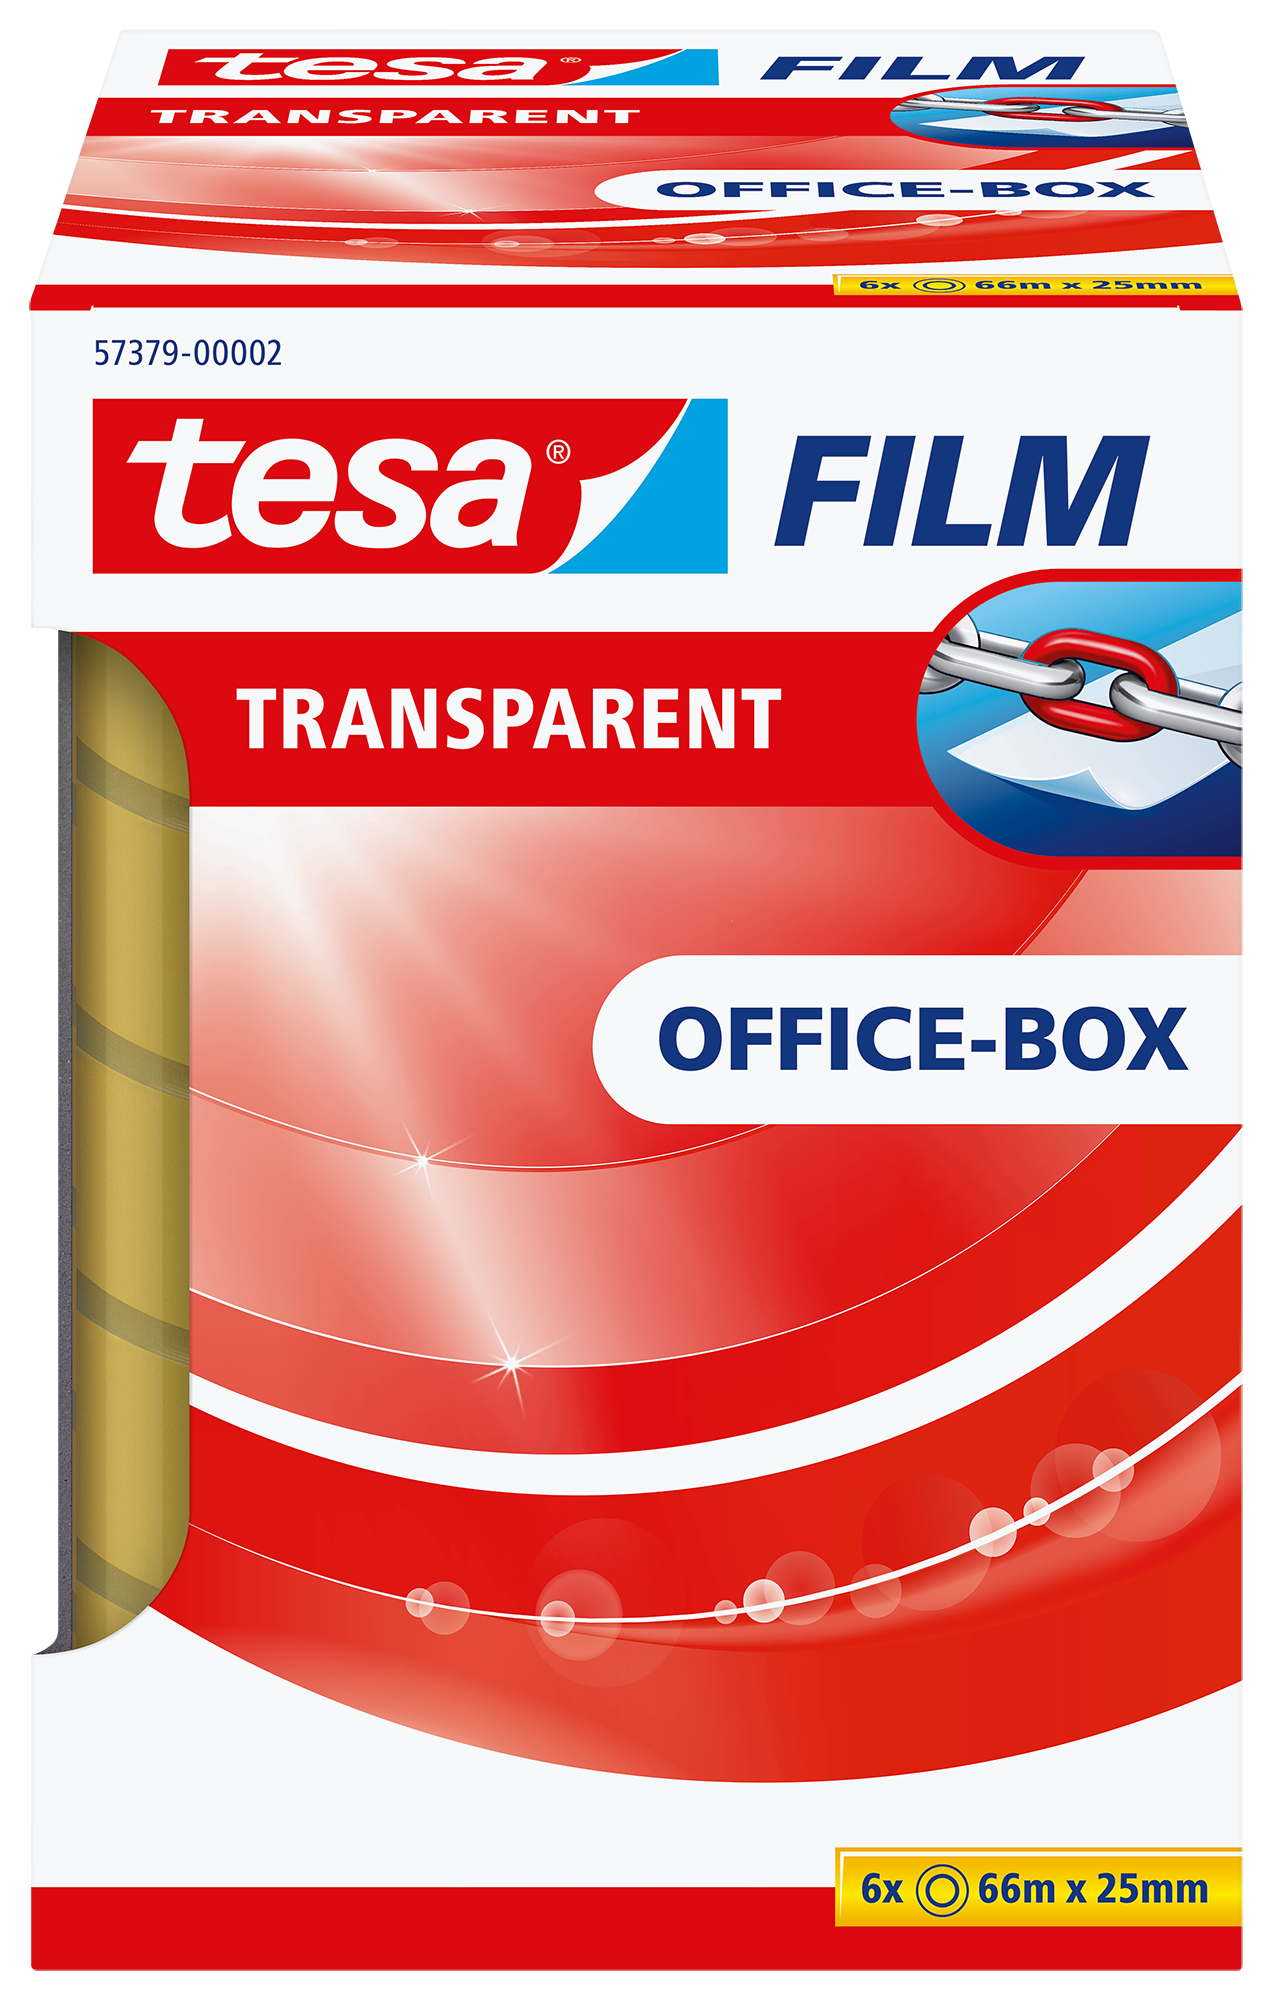 TESA tesafilm transparent 25mmx66m 573790000 5 rl. + 1 rl. in Office-Box 5 rl. + 1 rl. in Office-Box